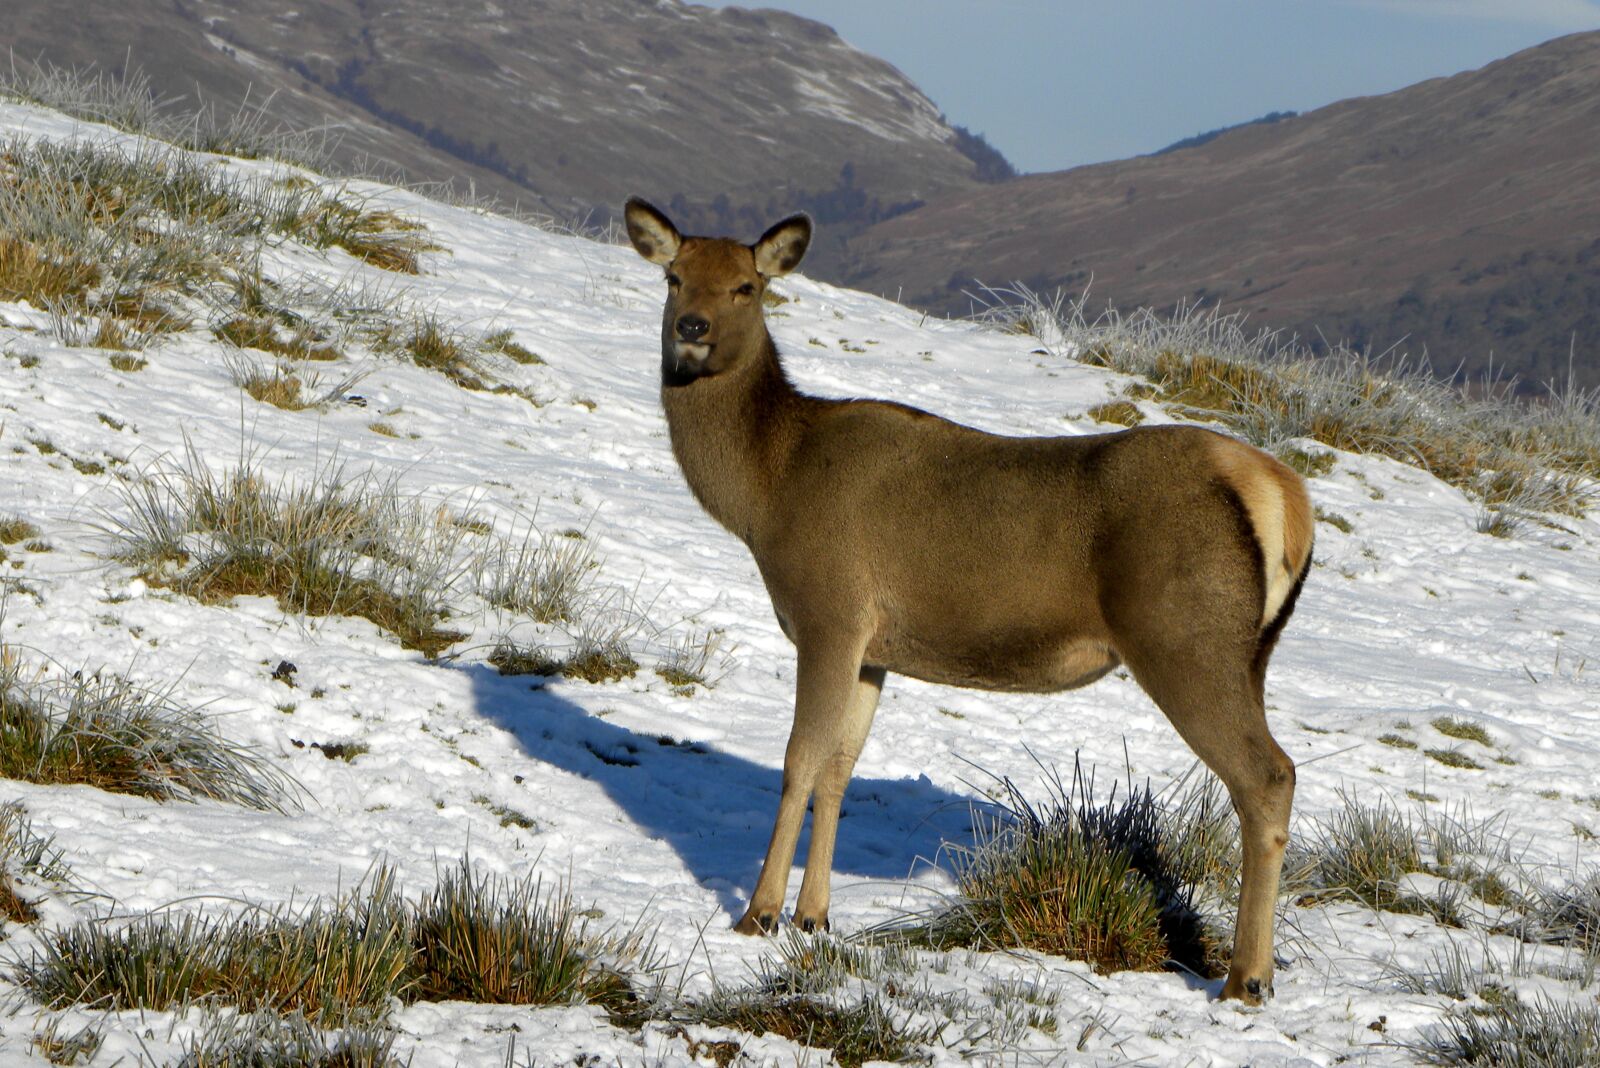 Nikon Coolpix P90 sample photo. Deer, nature, animal photography